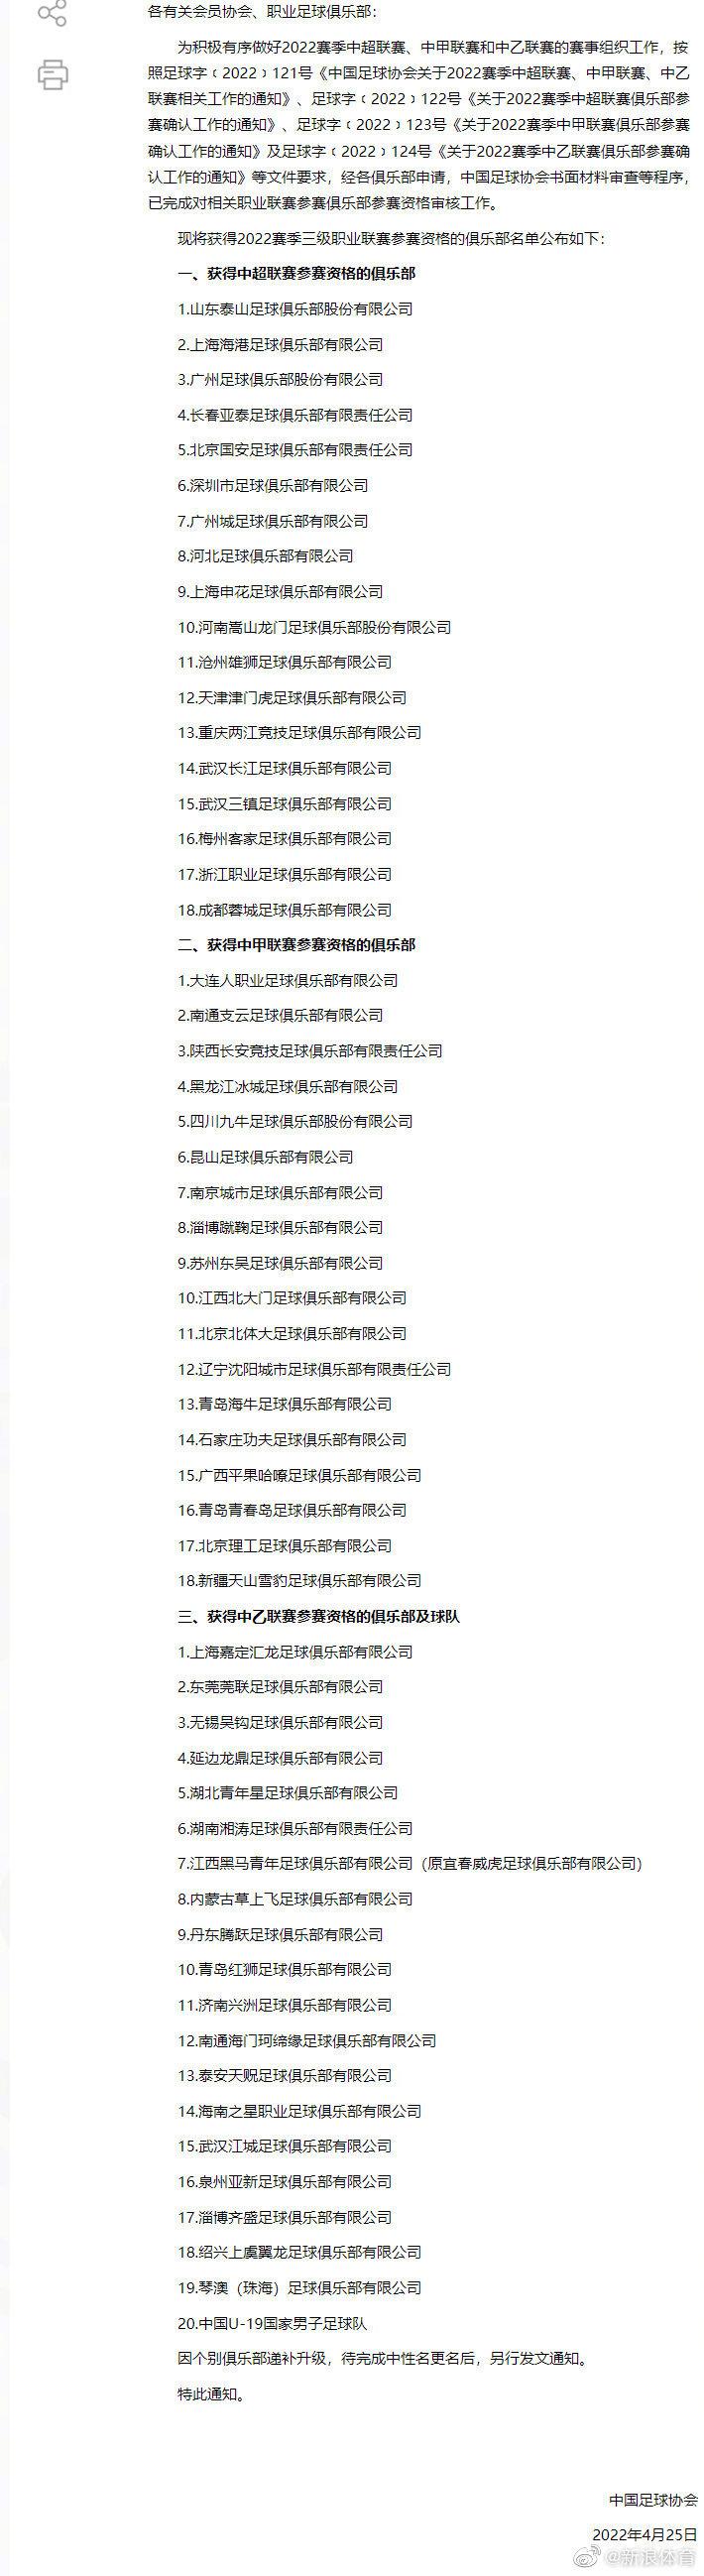 中国足协公布三级联赛完整名单(1)